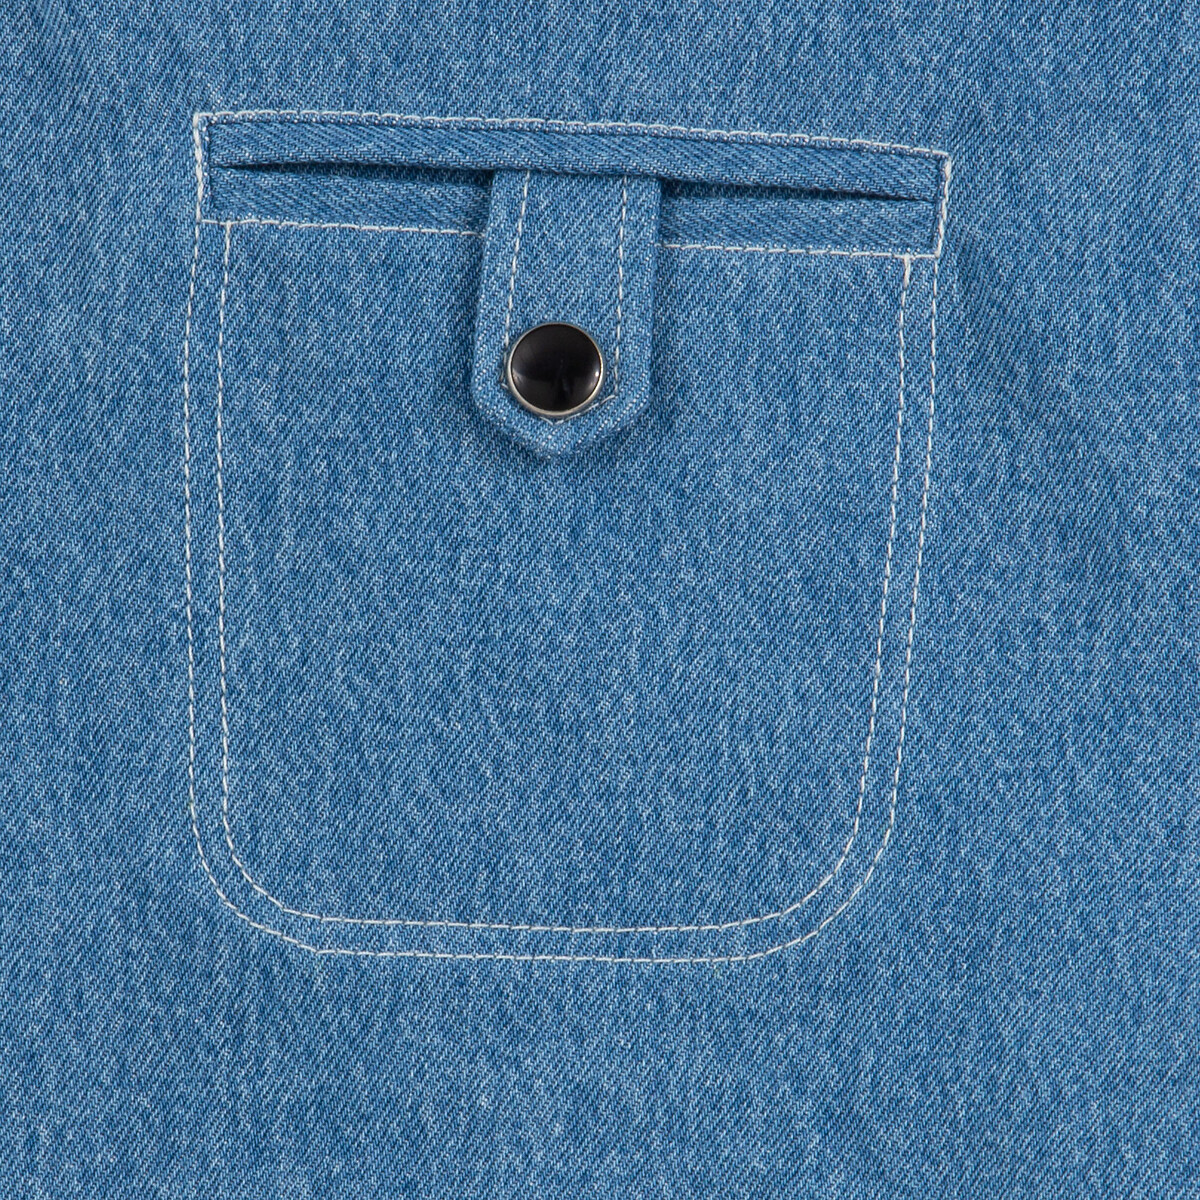 Шорты La Redoute Из джинсовой ткани 48 (FR) - 54 (RUS) синий, размер 48 (FR) - 54 (RUS) Из джинсовой ткани 48 (FR) - 54 (RUS) синий - фото 2